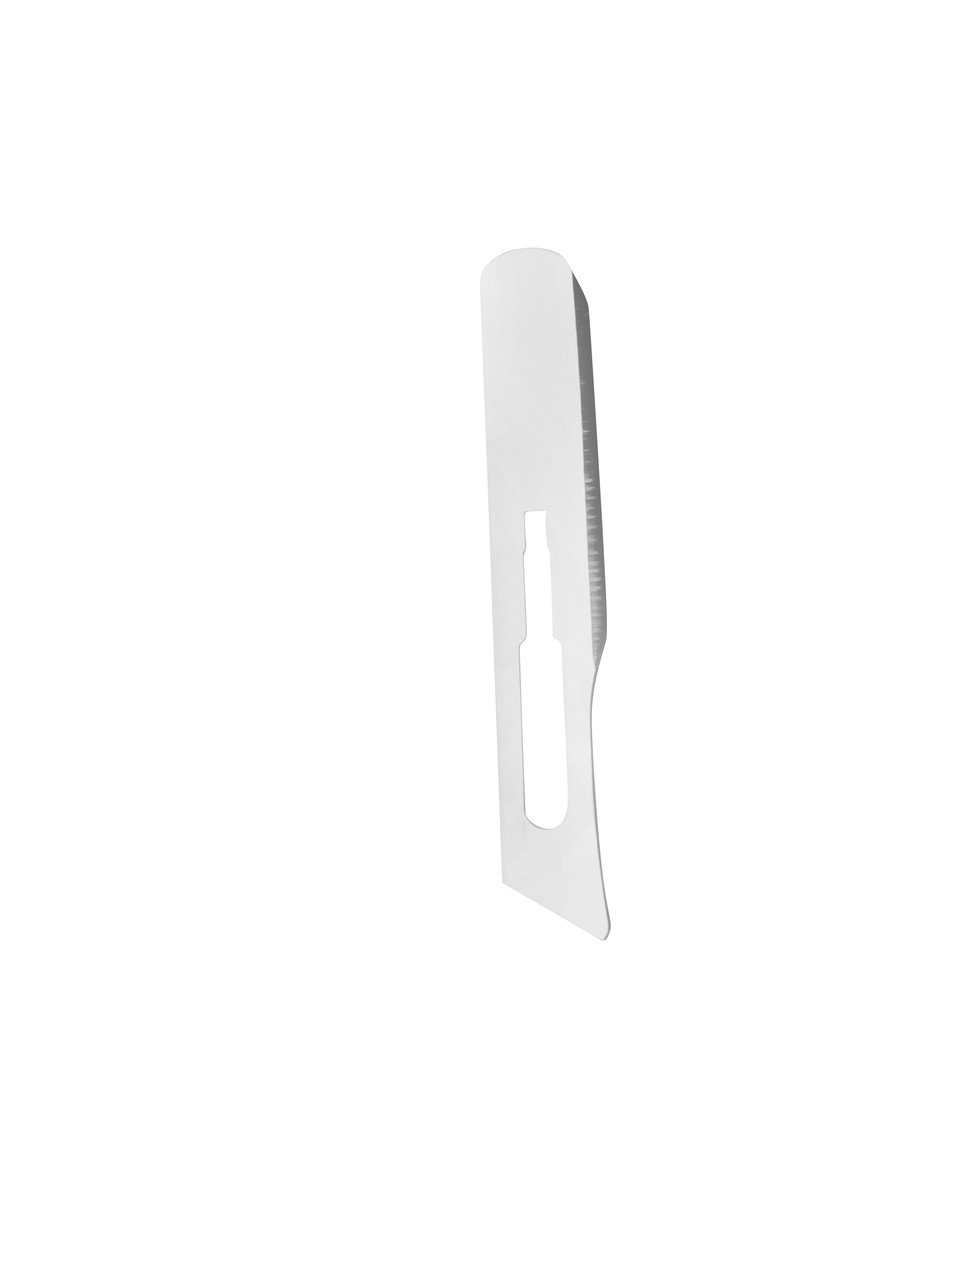 Accu-Edge Blades for Replaceable Blade Scissors, Sharp/Blunt Pair